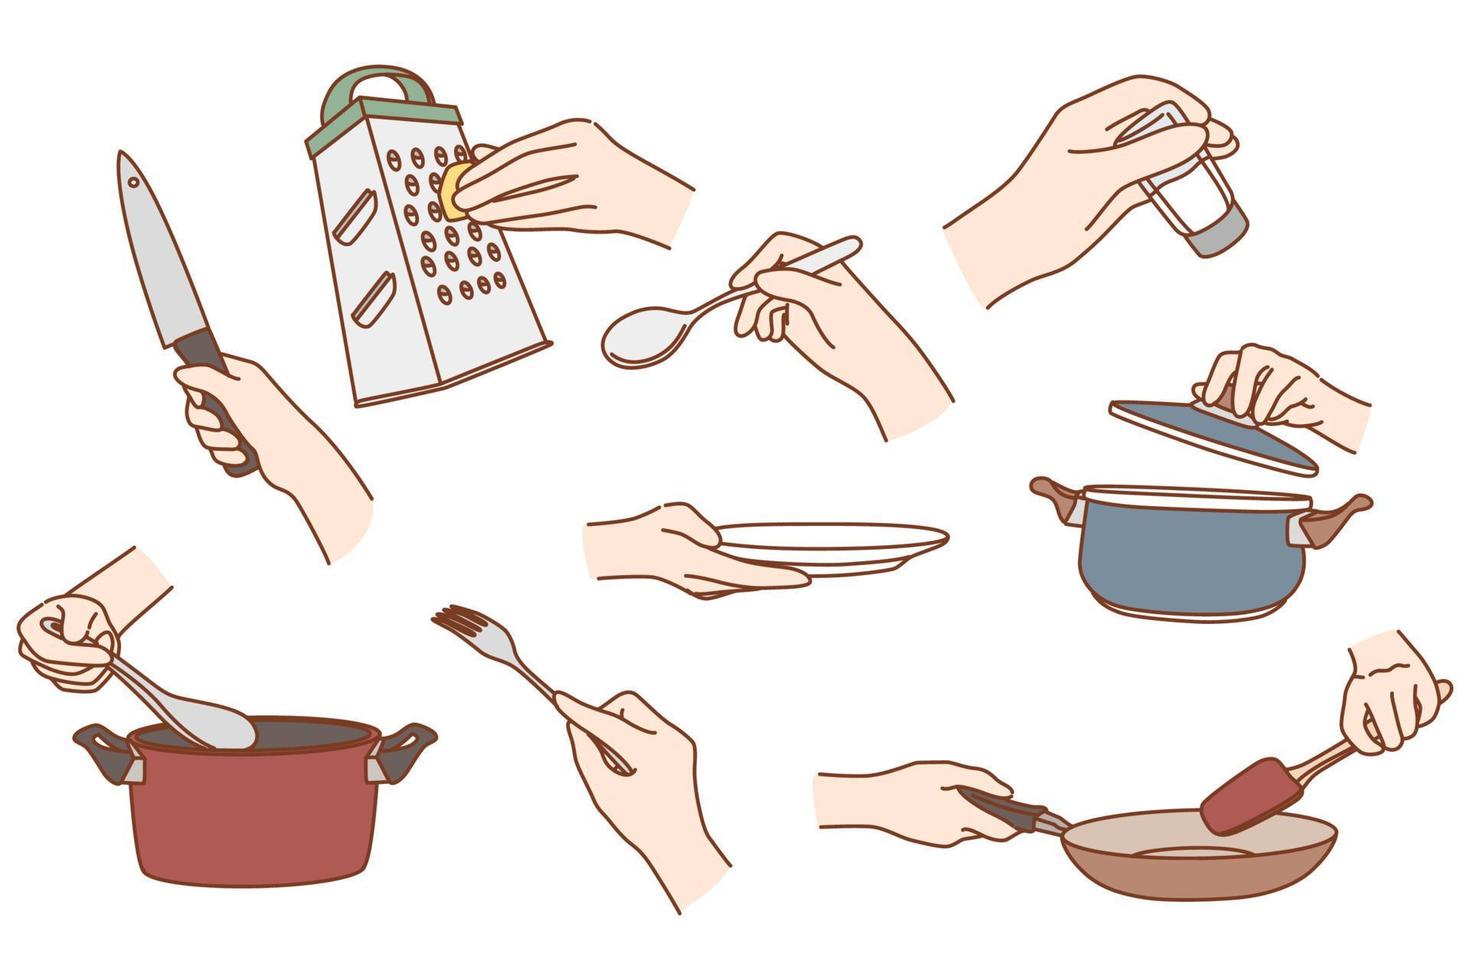 uppsättning av person använda sig av kök verktyg förbereda mat på Hem eller restaurang. samling av hand matlagning redskap eller Utrustning måltid förberedelse. kock laga mat klasser begrepp. vektor illustration.